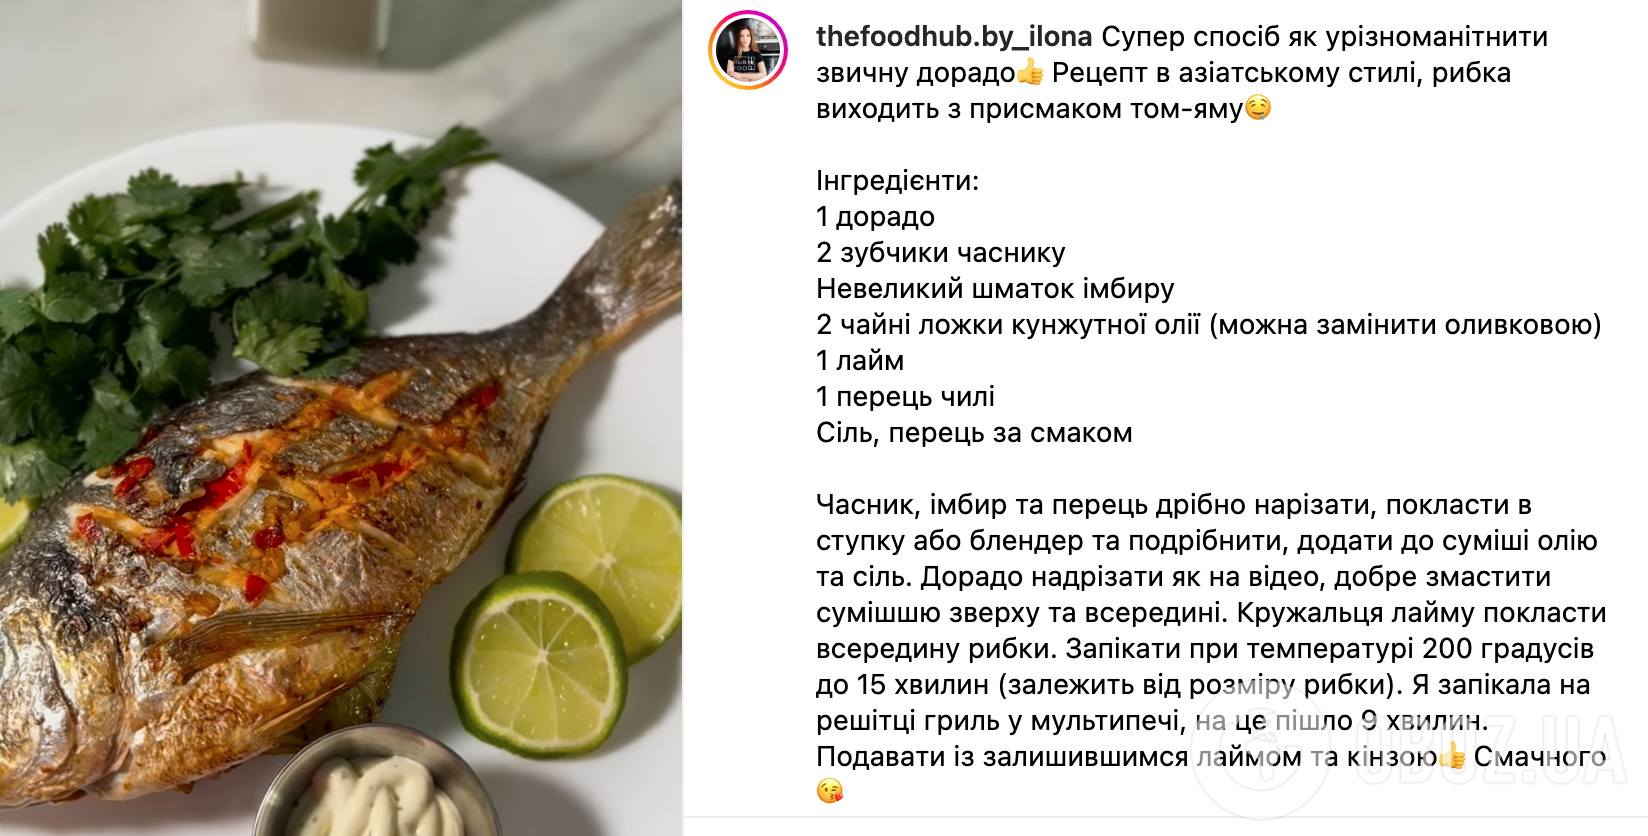 Рецепт риби